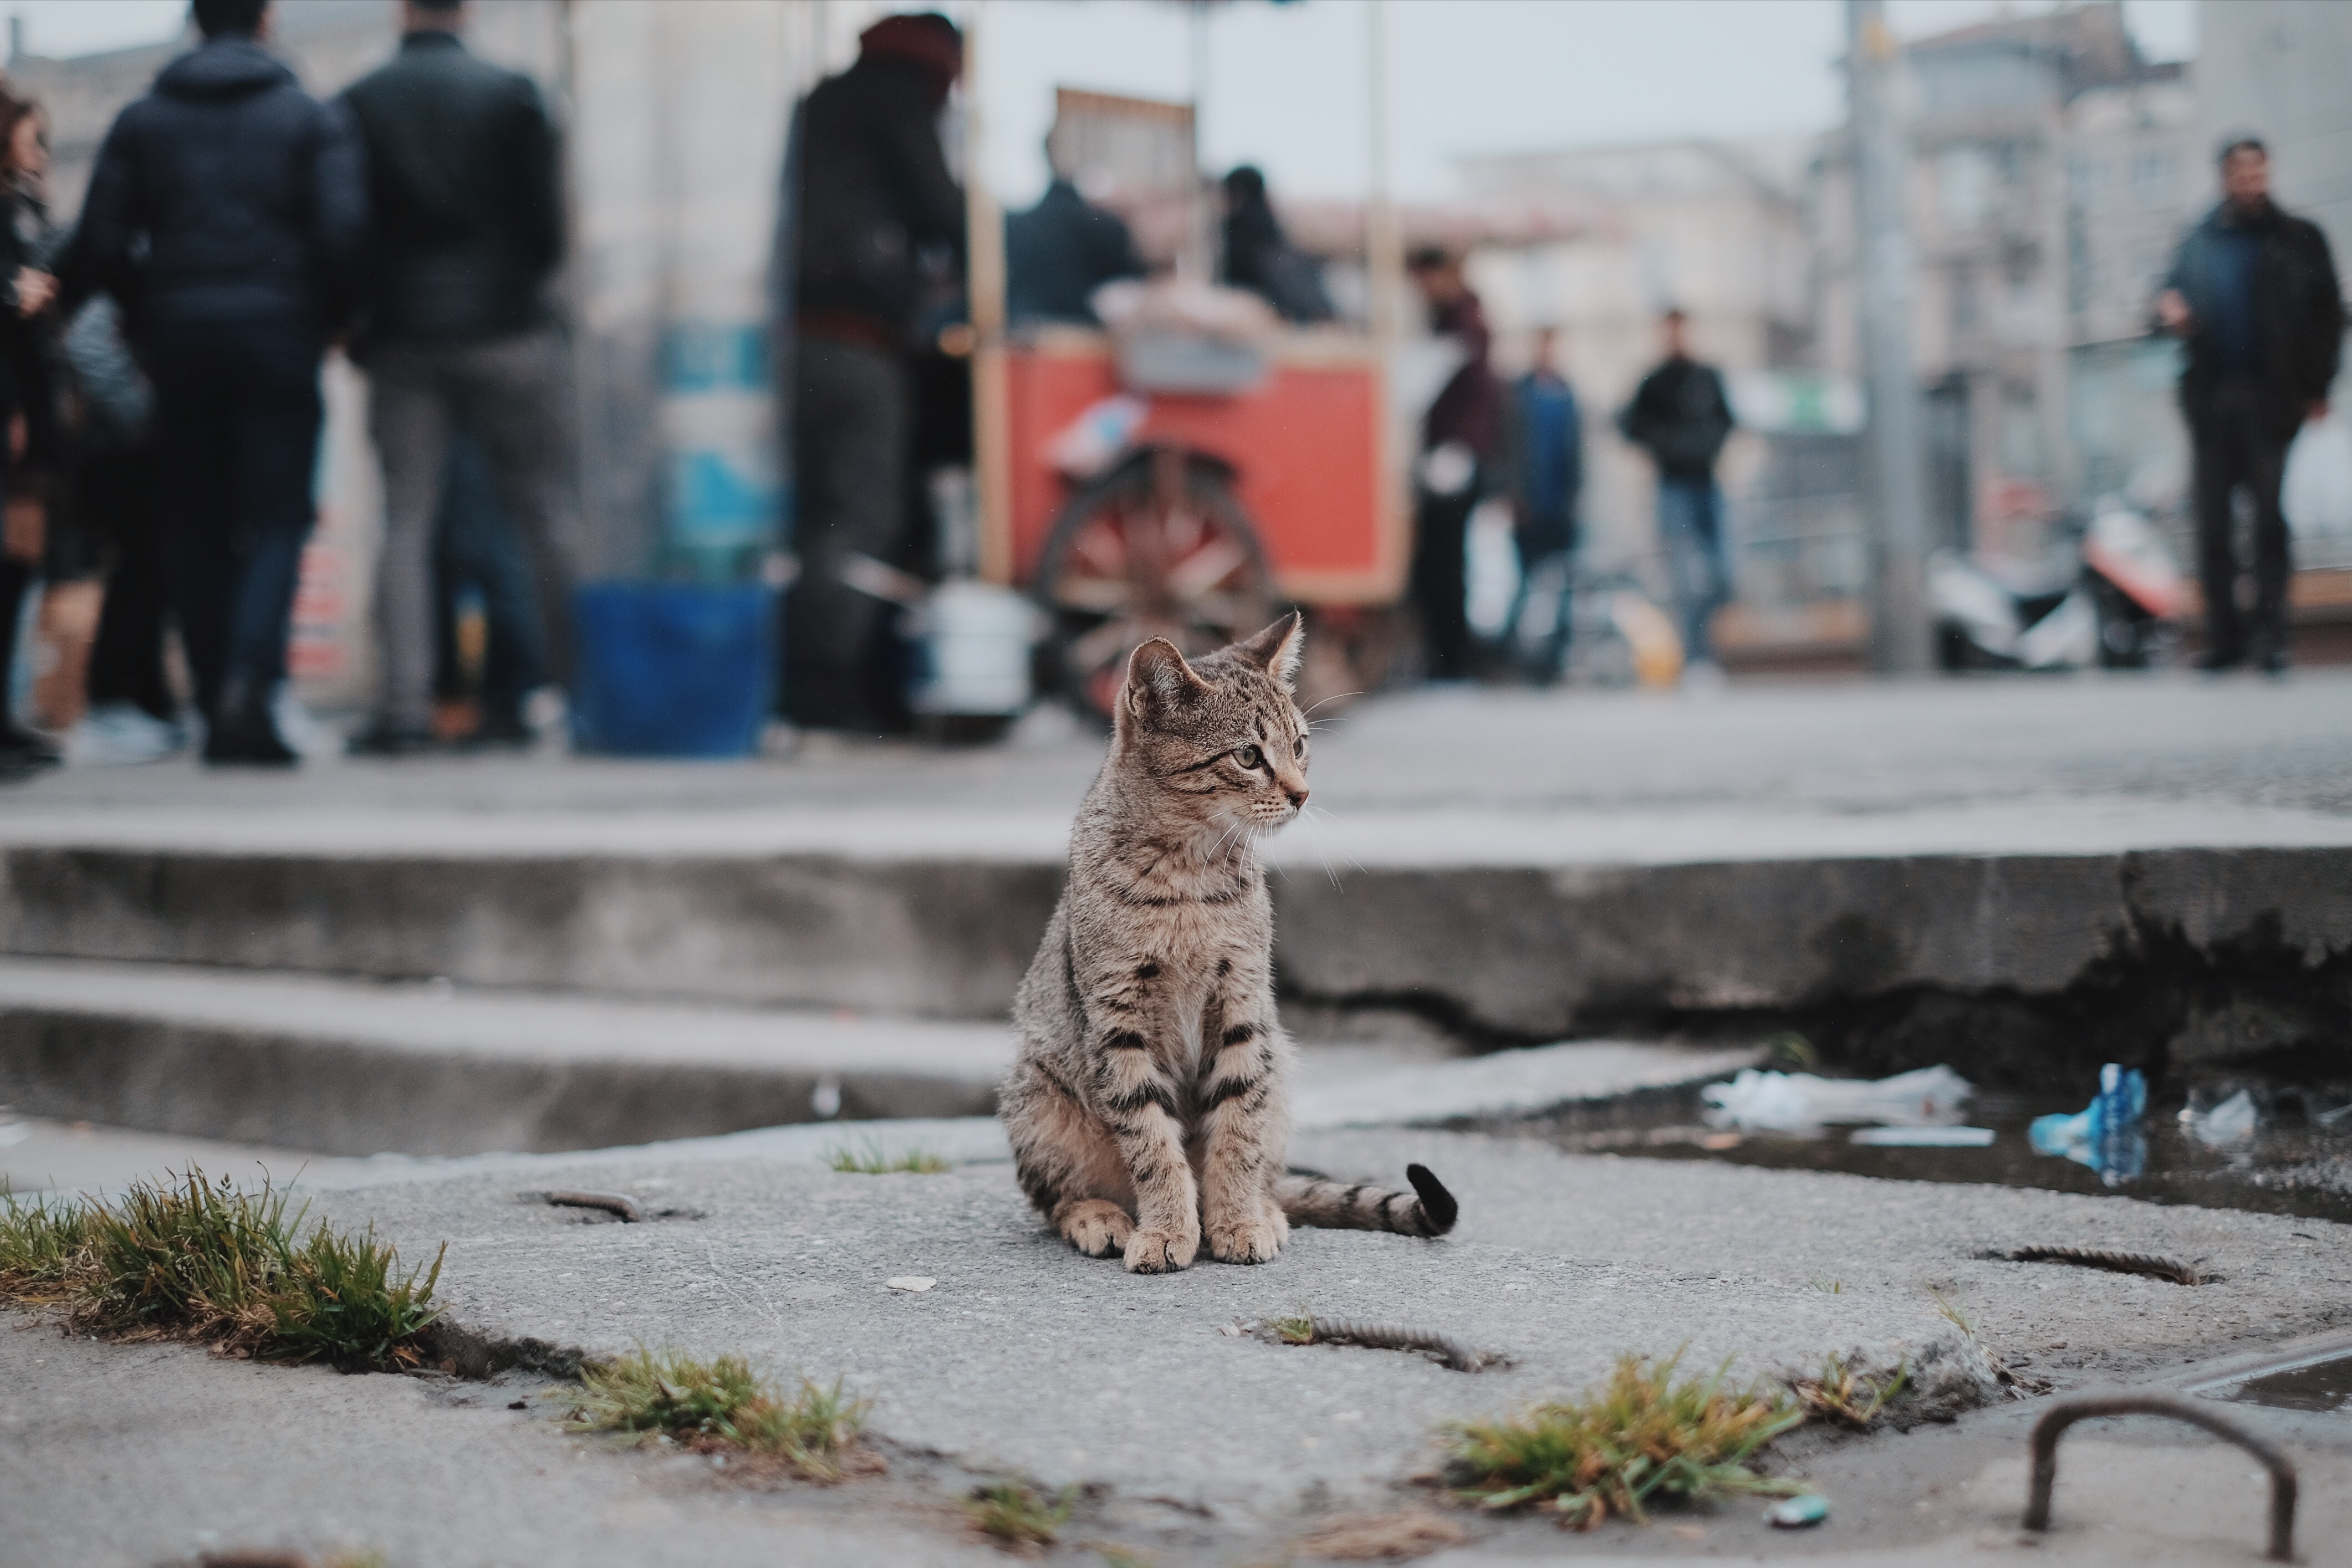 Ein junges, verlorenes Kätzchen sitzt auf der Straße, inmitten der Menge, Pfützen und Müll. Die Straße sollte kein Ort für Katzen sein.